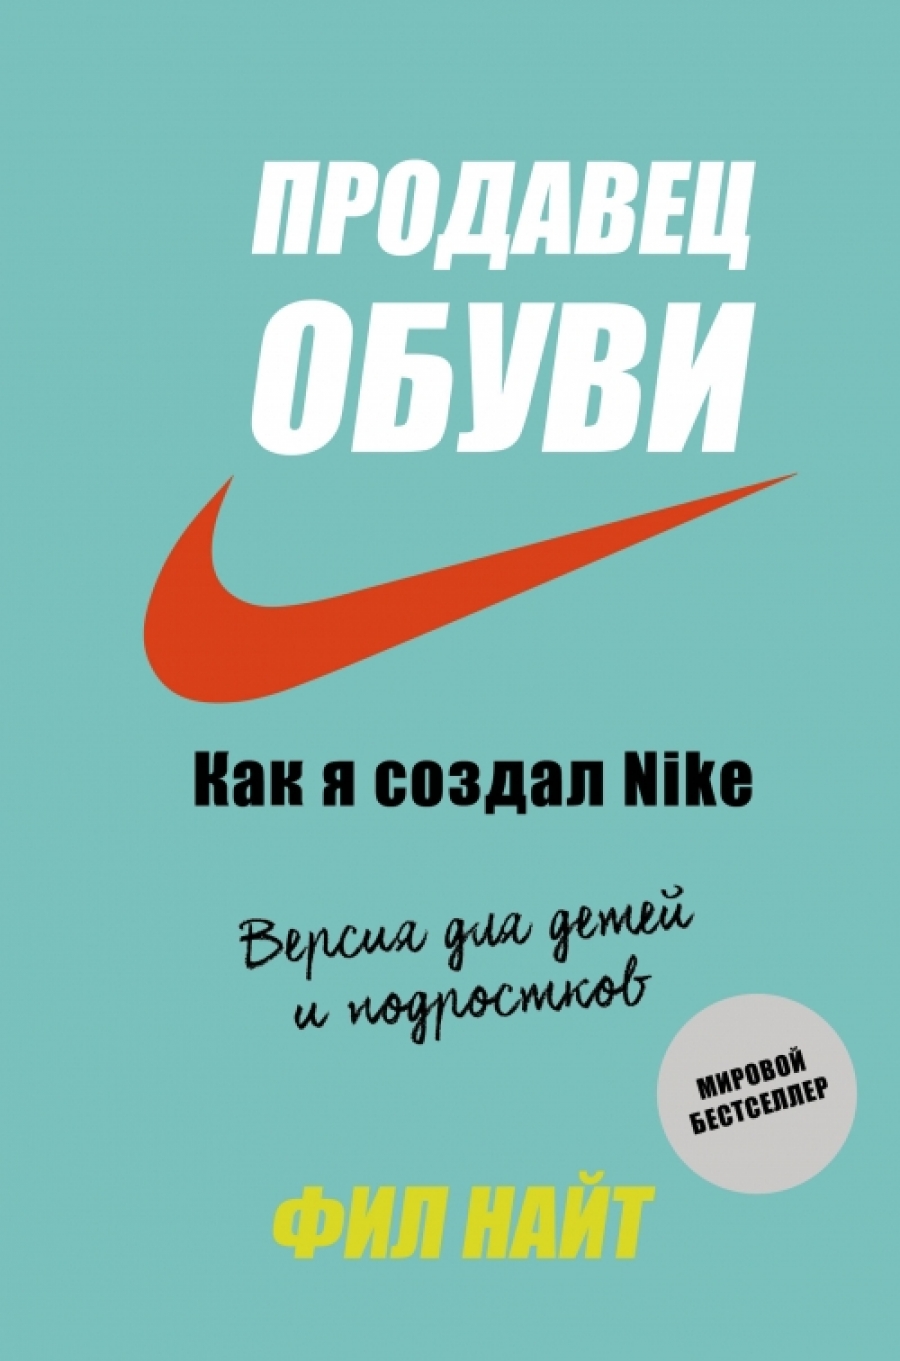  .  .    Nike.      